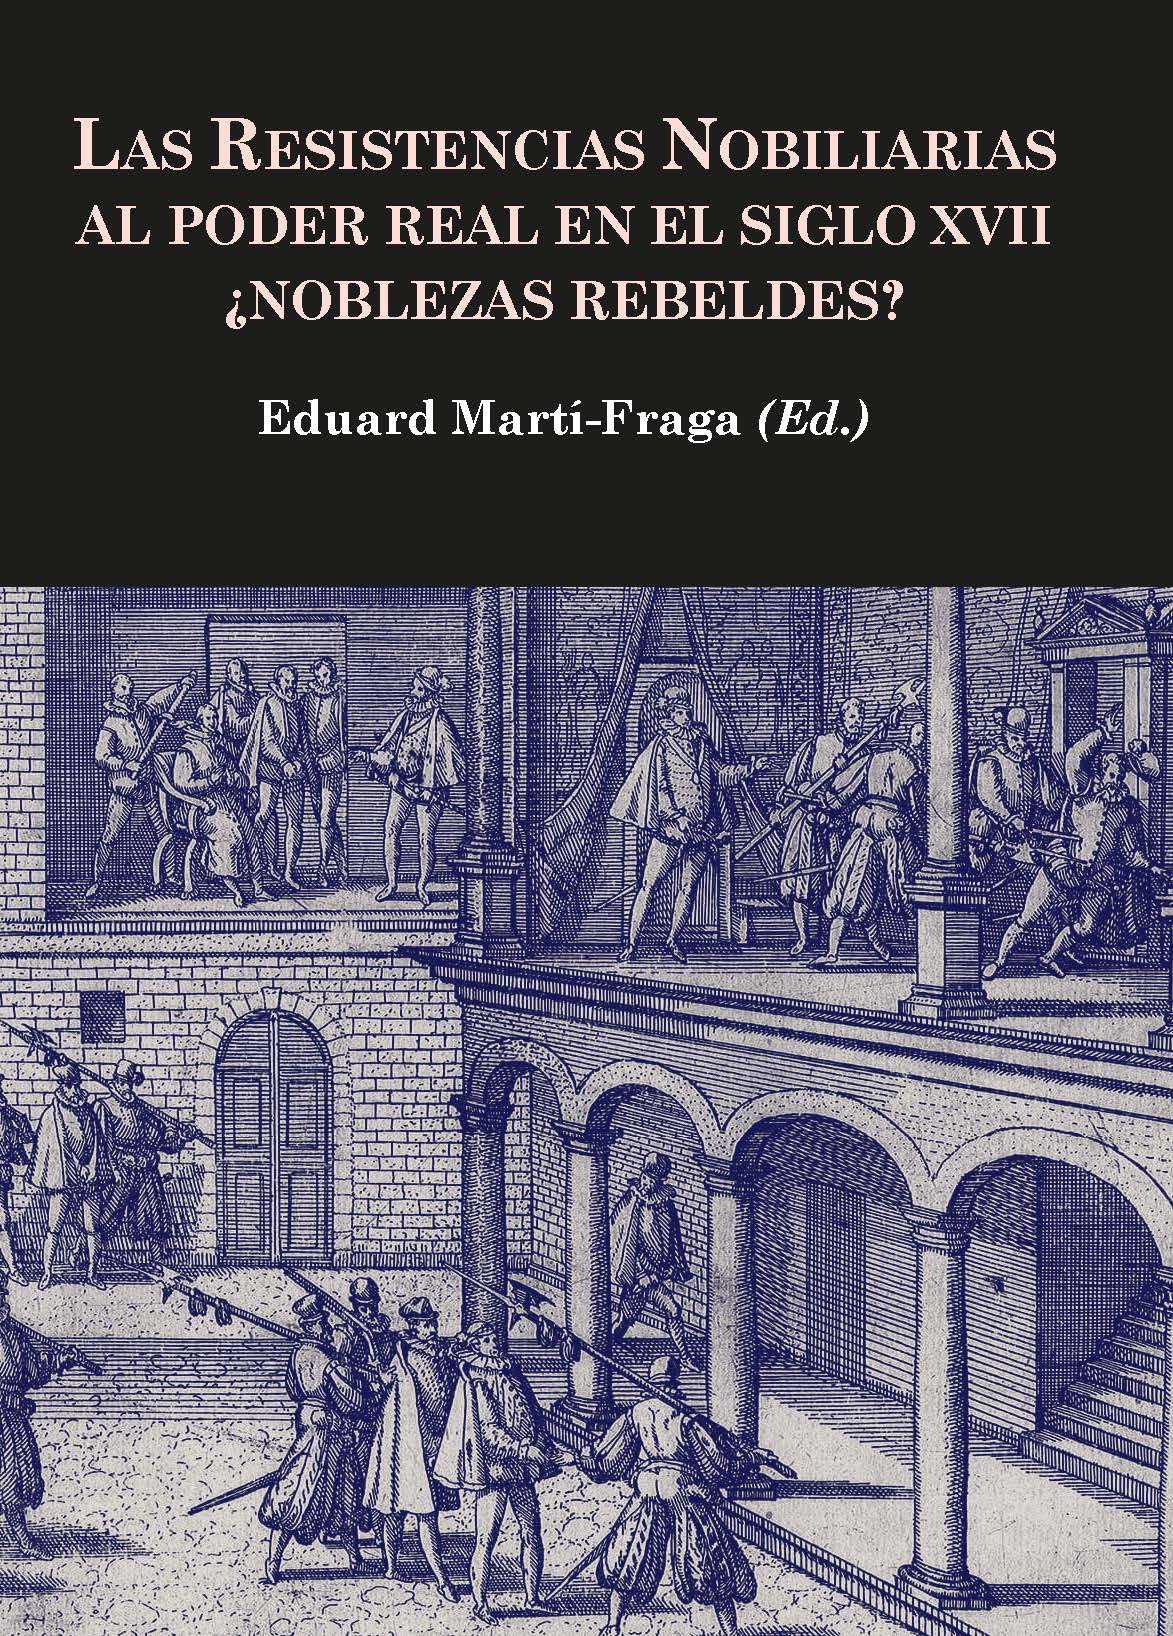 Las resistencias nobiliarias al poder real en el siglo XVII ¿Noblezas rebeldes?